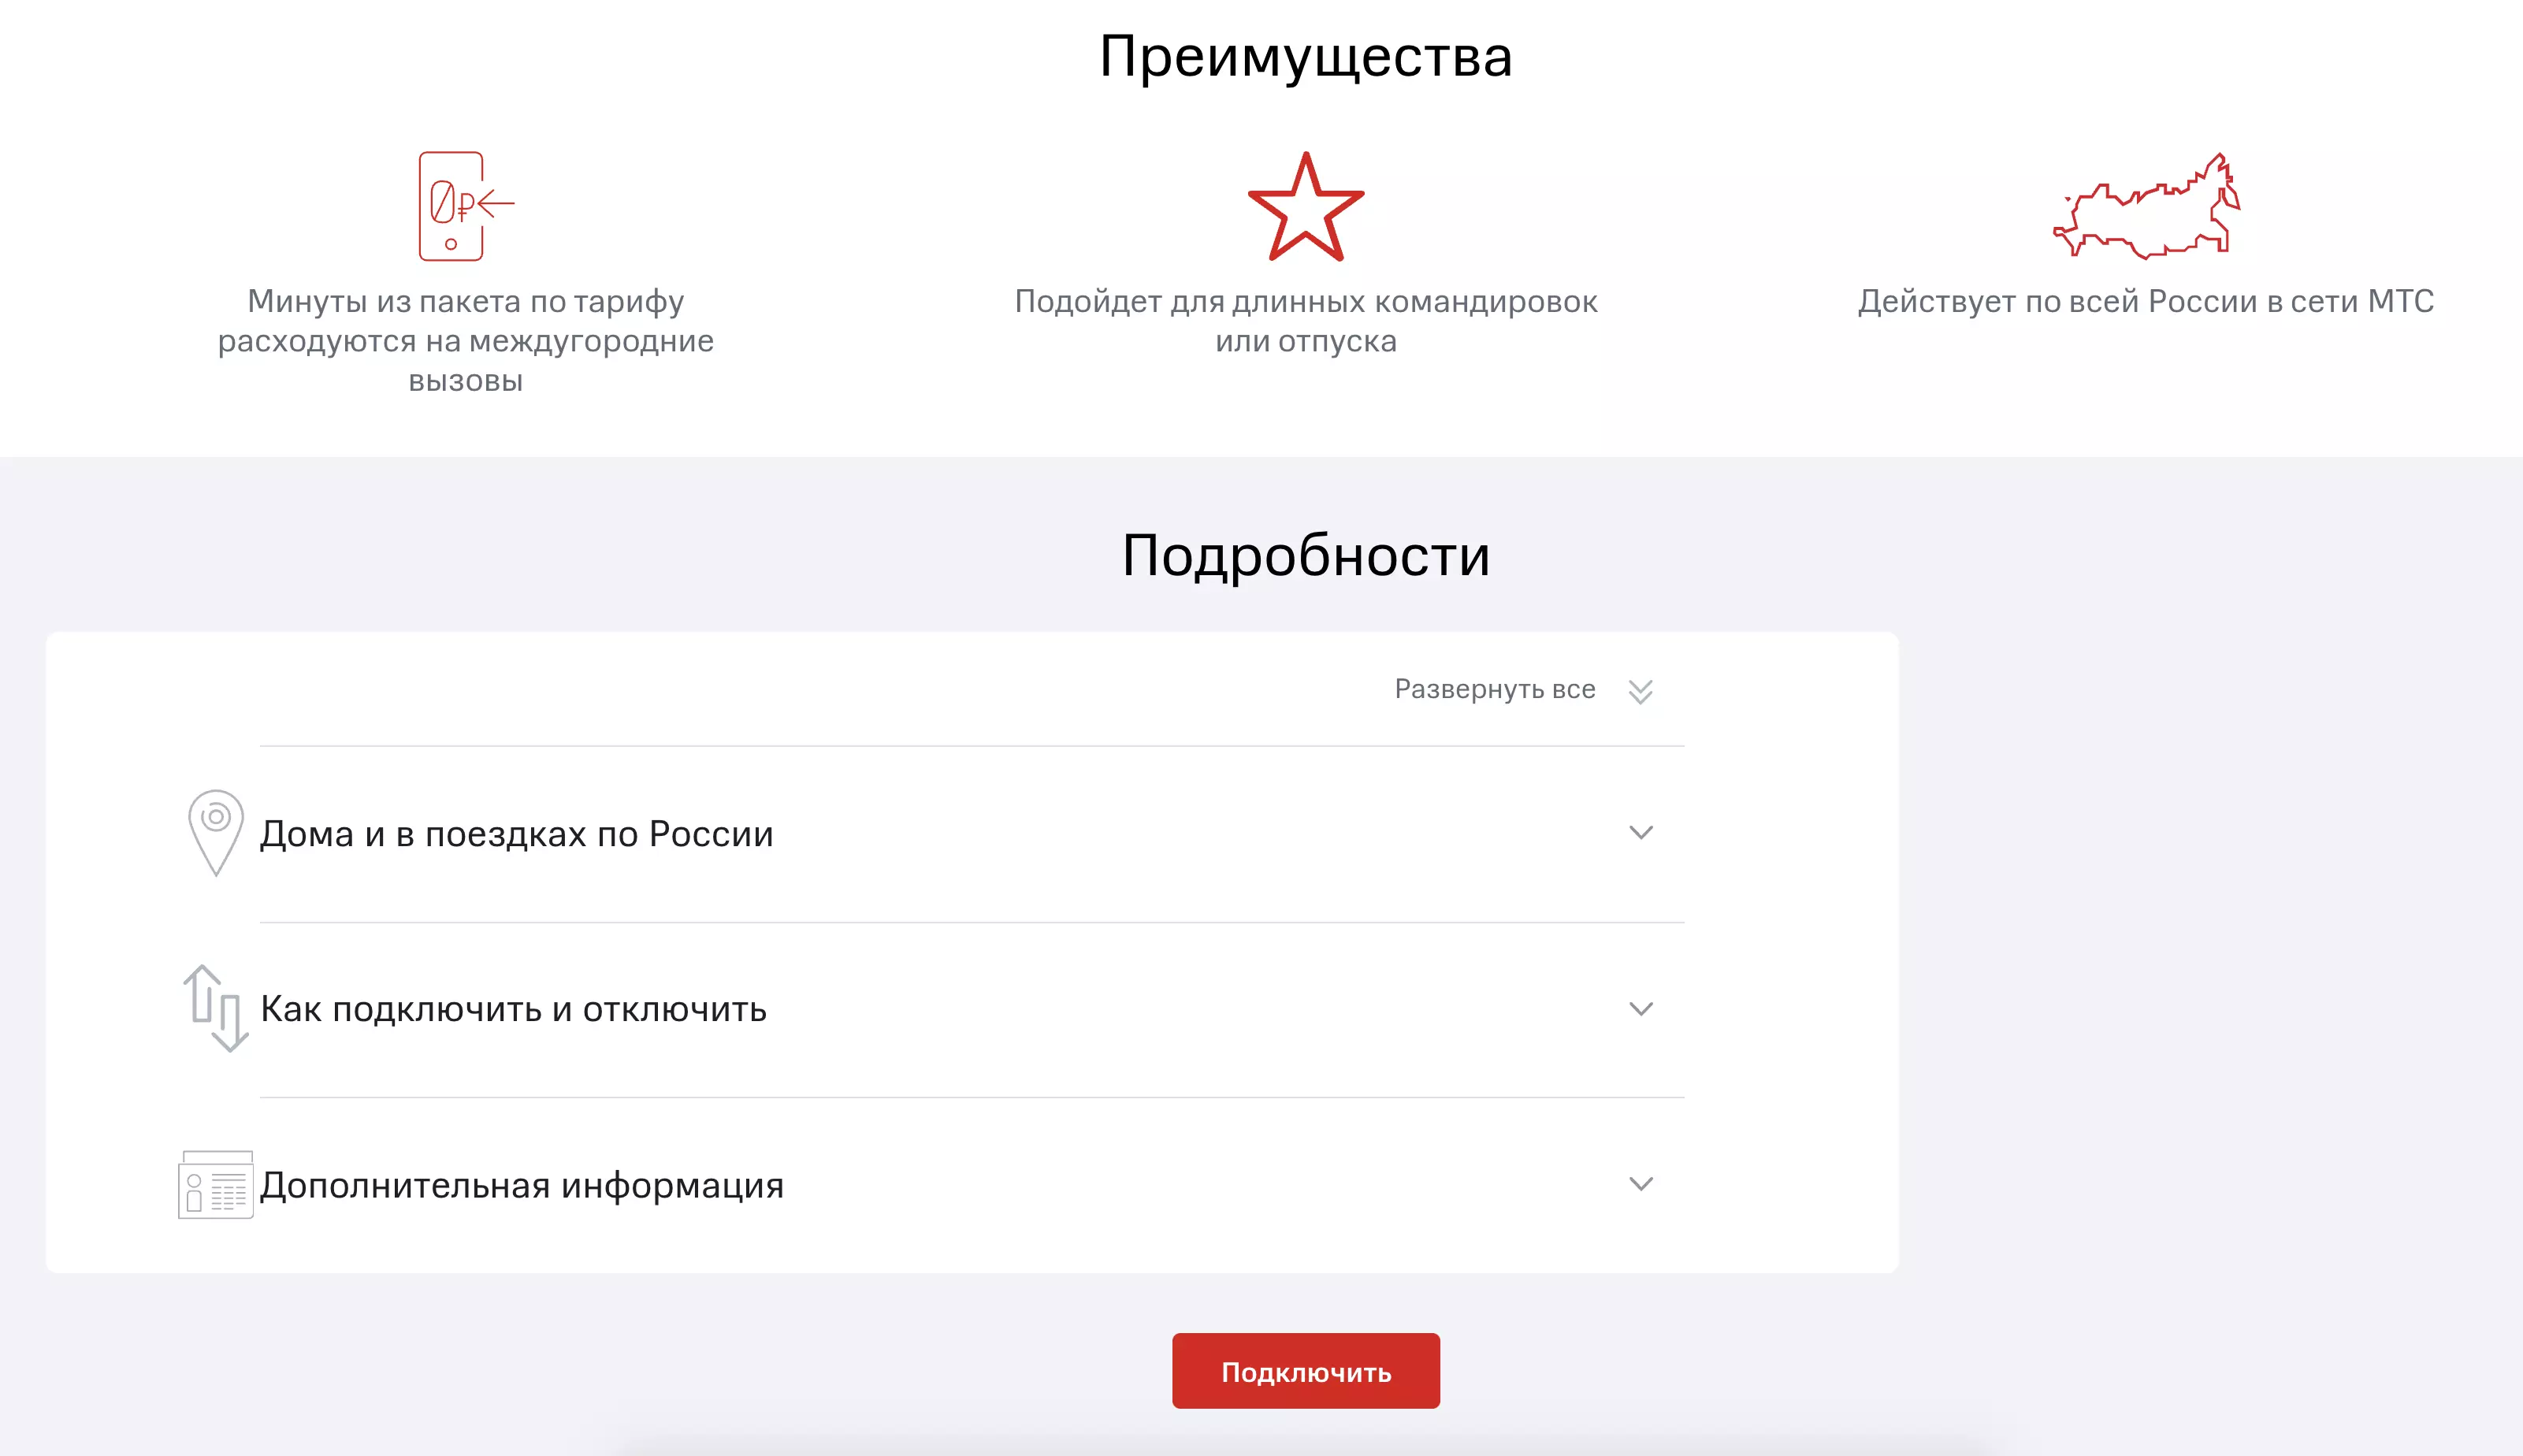 Как подключить мобильный интернет МТС в Крыму